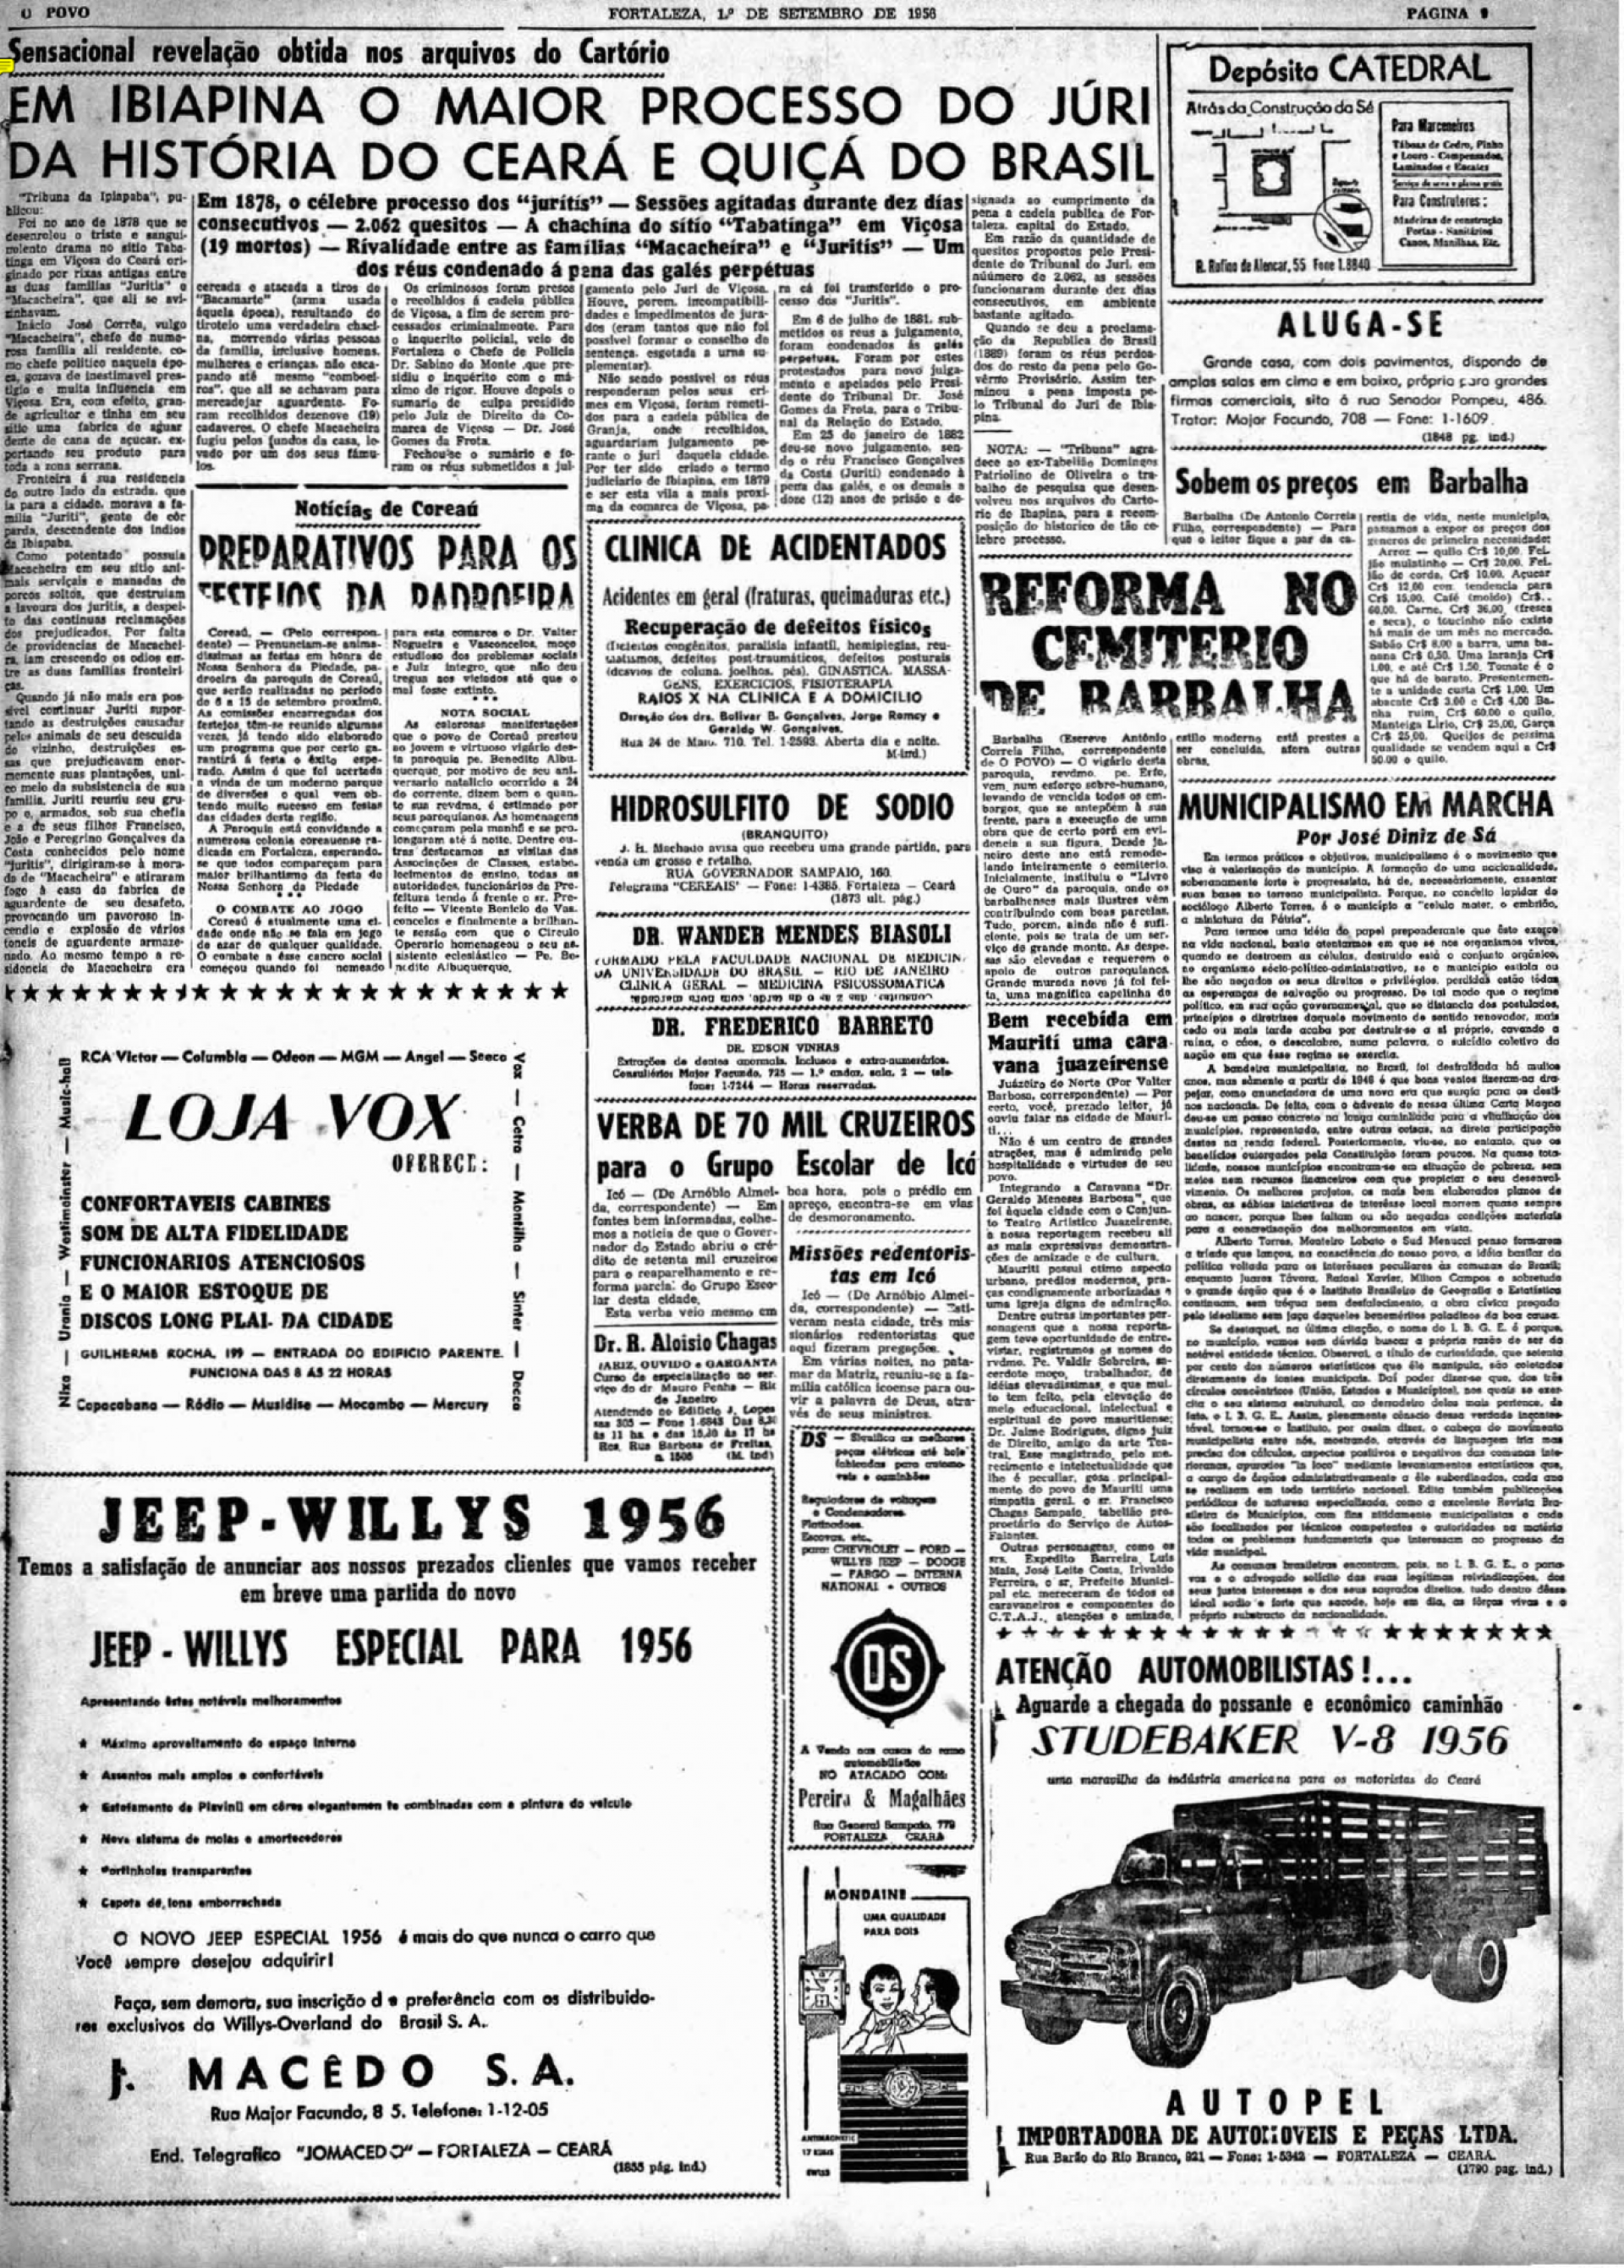 Em 1956, O POVO recuperou com base em arquivos de cartório a história da chacina de 1878(Foto: O POVO.doc)